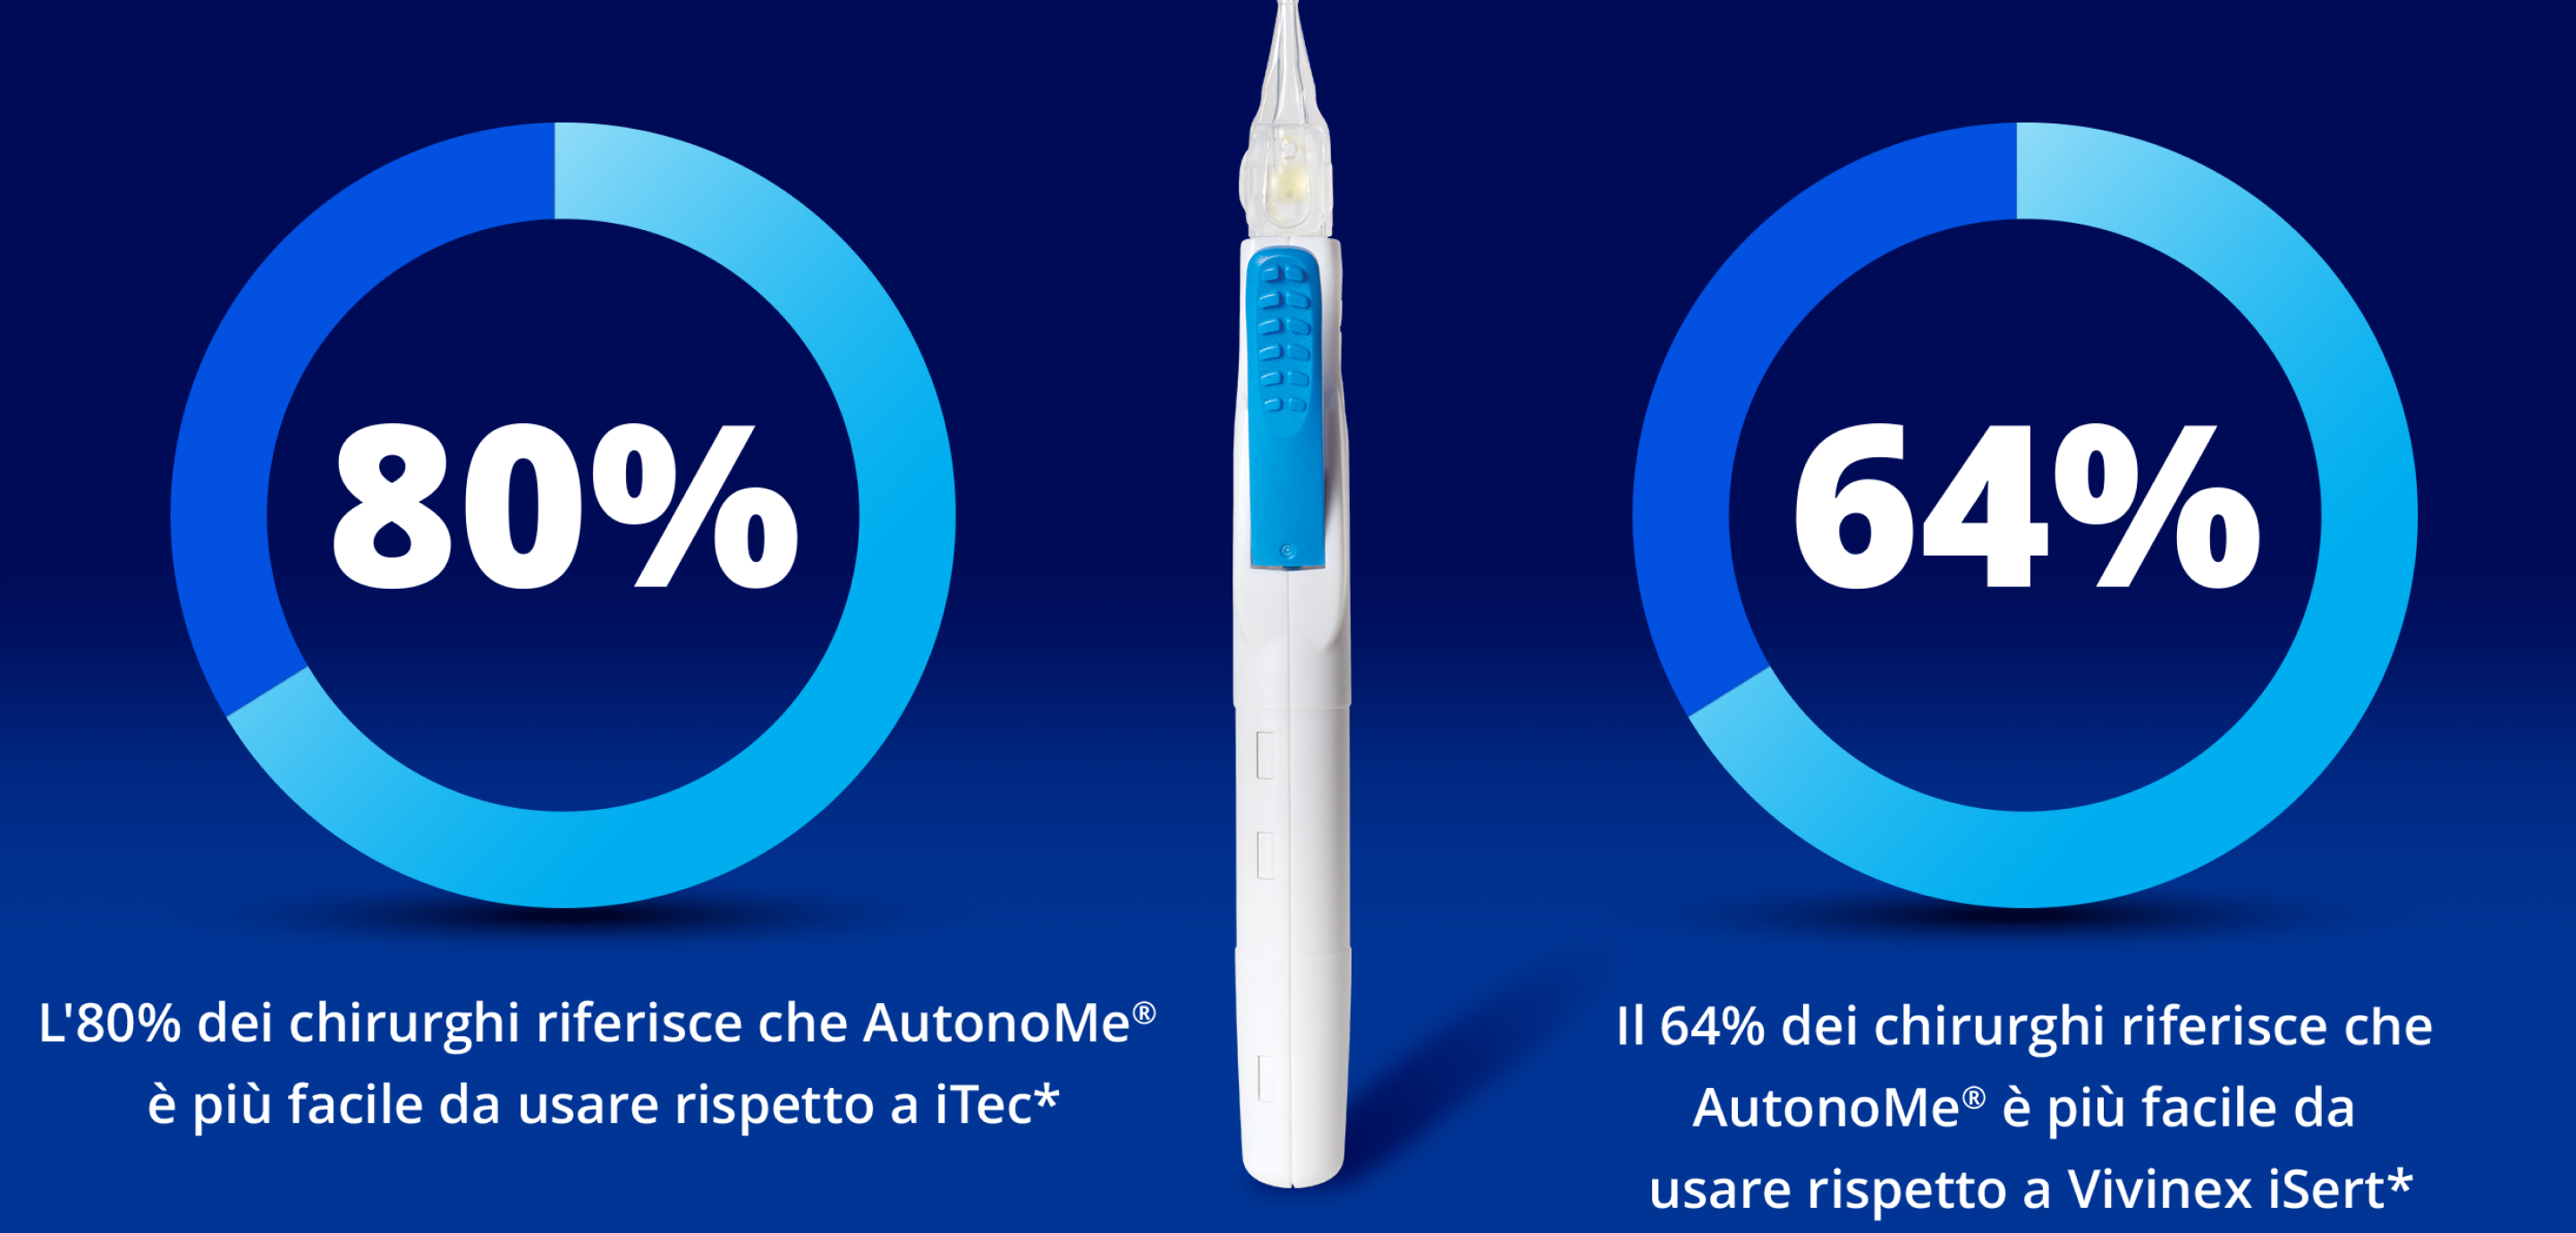 AutonoMe Delivery System tra due cerchi blu. Il cerchio a sinistra rappresenta visivamente l'80%. Il testo bianco sotto questo cerchio recita: "L'80% dei chirurghi ha dichiarato che AutonoMe è più facile da usare rispetto a iTec". Il cerchio a destra rappresenta visivamente il 64%. Il testo bianco sotto questo cerchio recita "Il 64% dei chirurghi ha indicato AutonoMe come più facile da usare rispetto a Vivinex iSert".